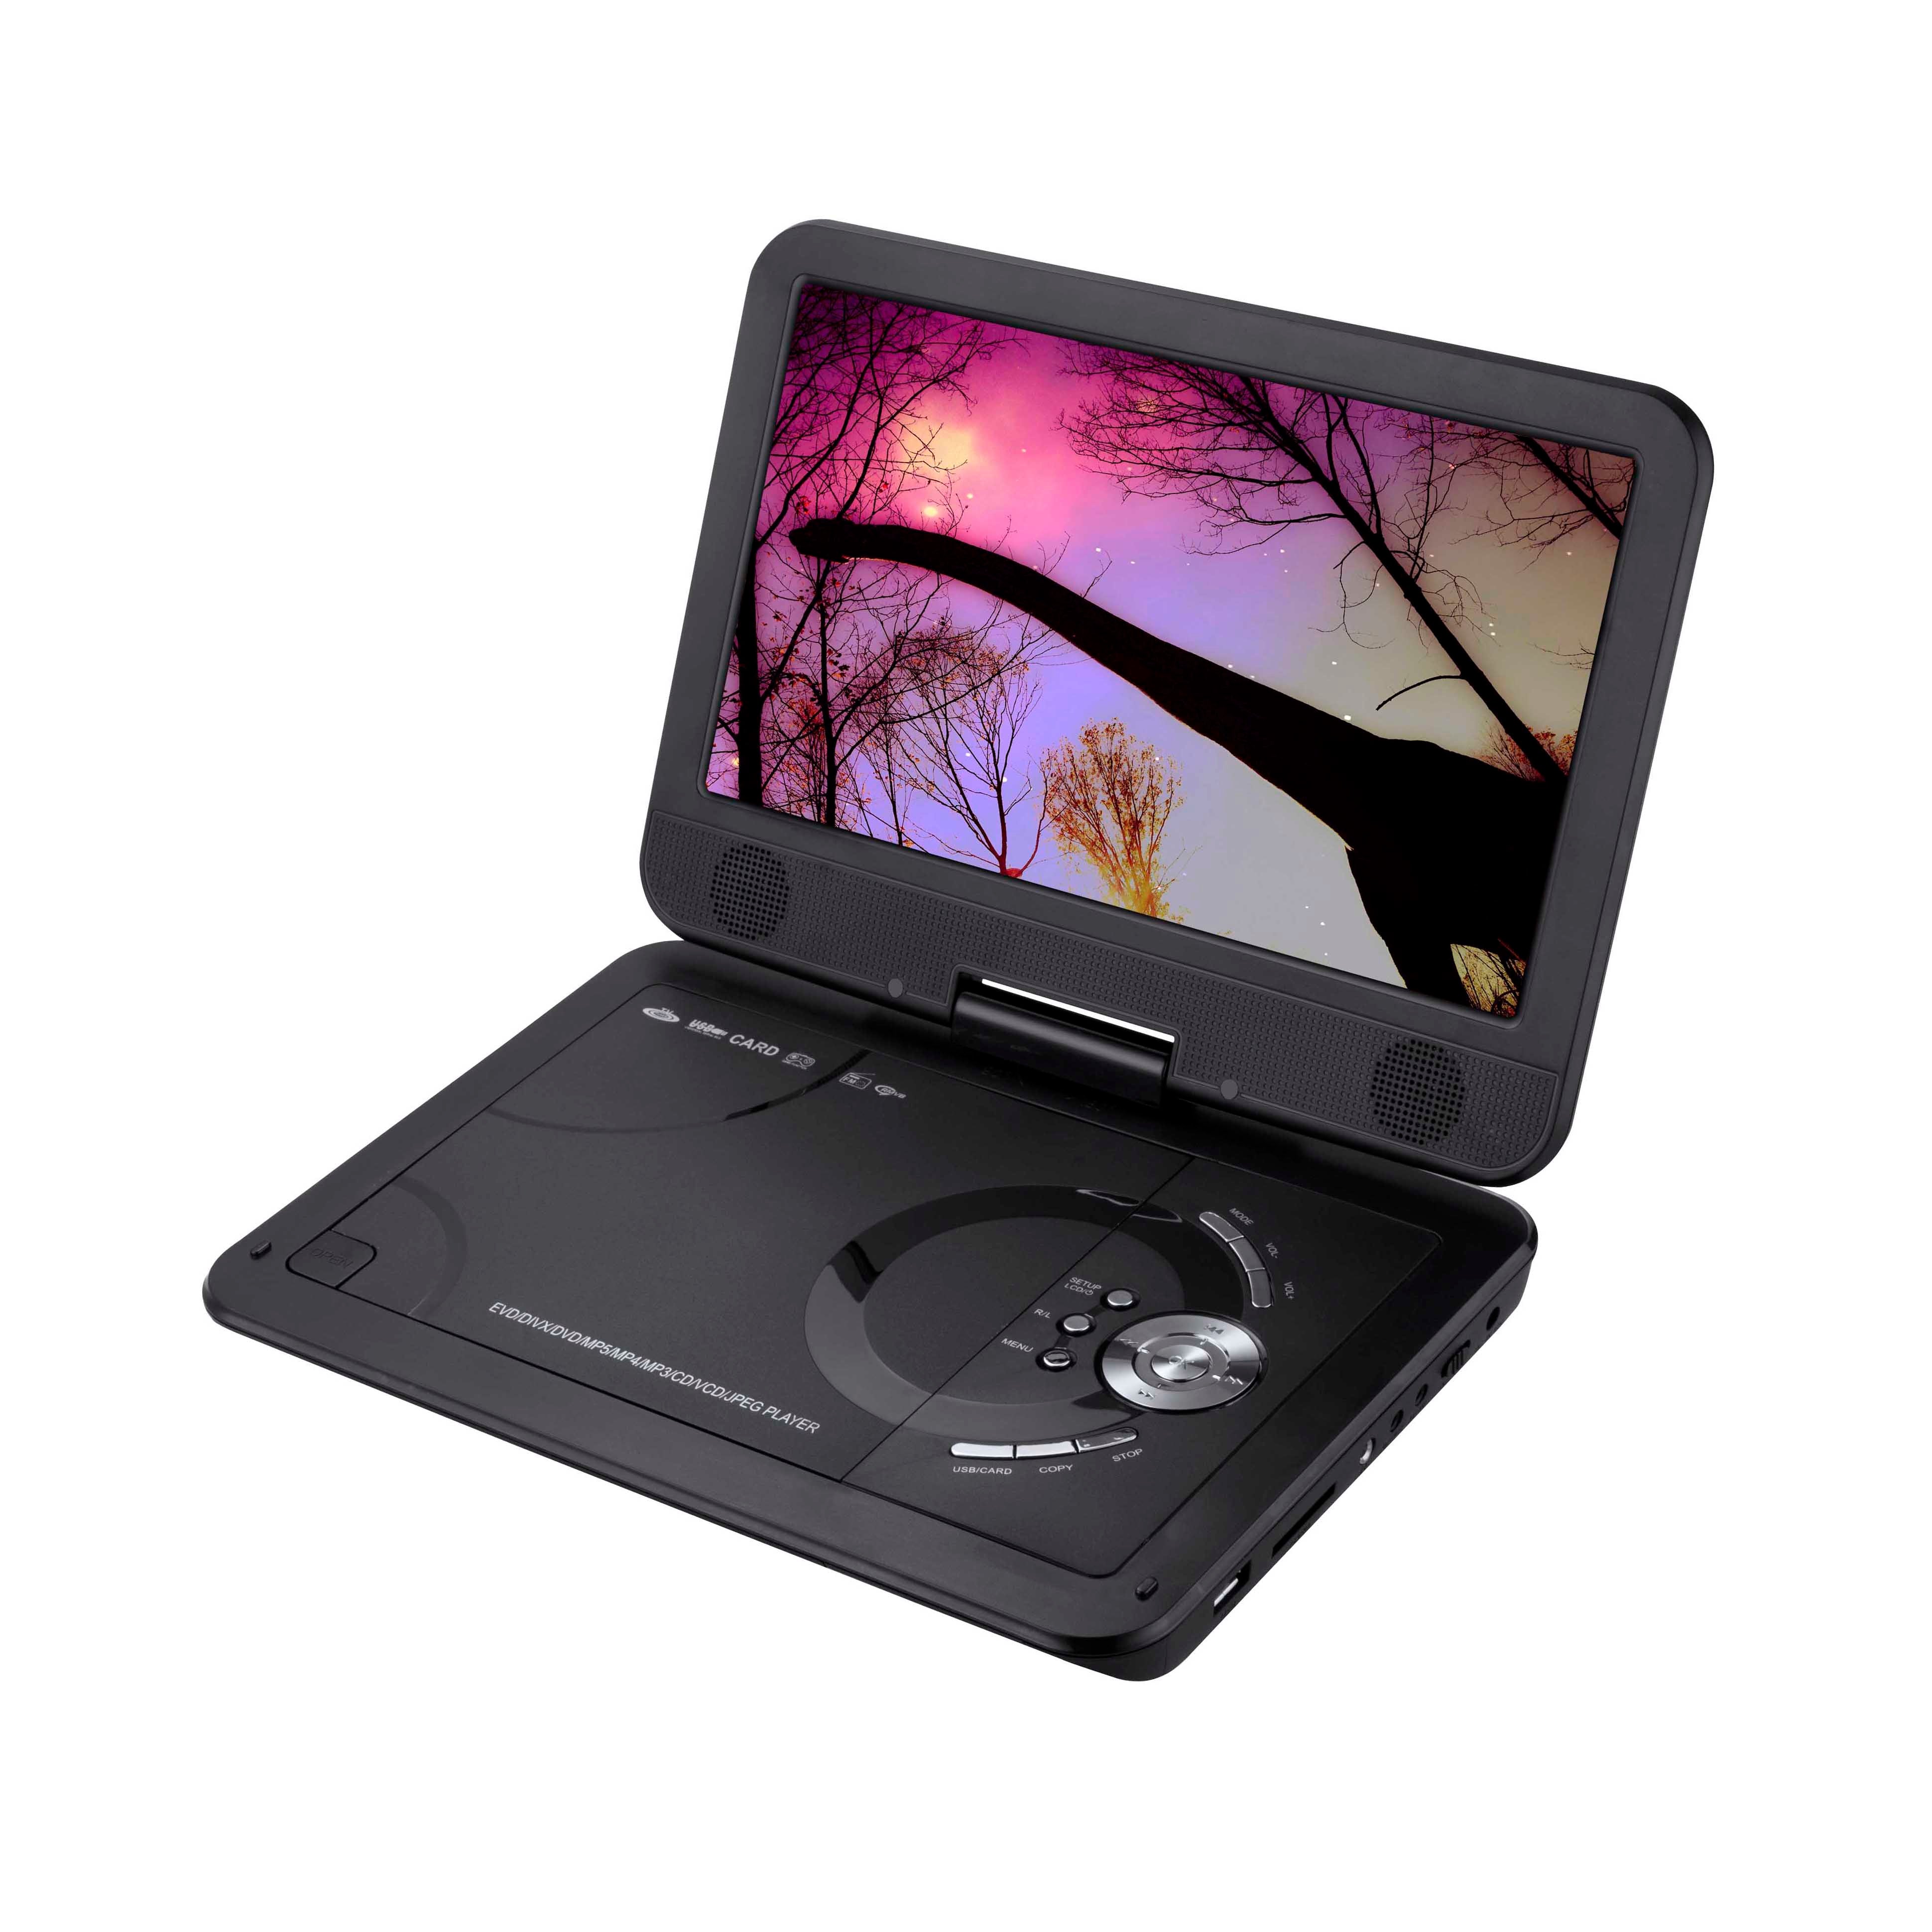 Portable CD/Cassette Player  Lenoxx Electronics Australia